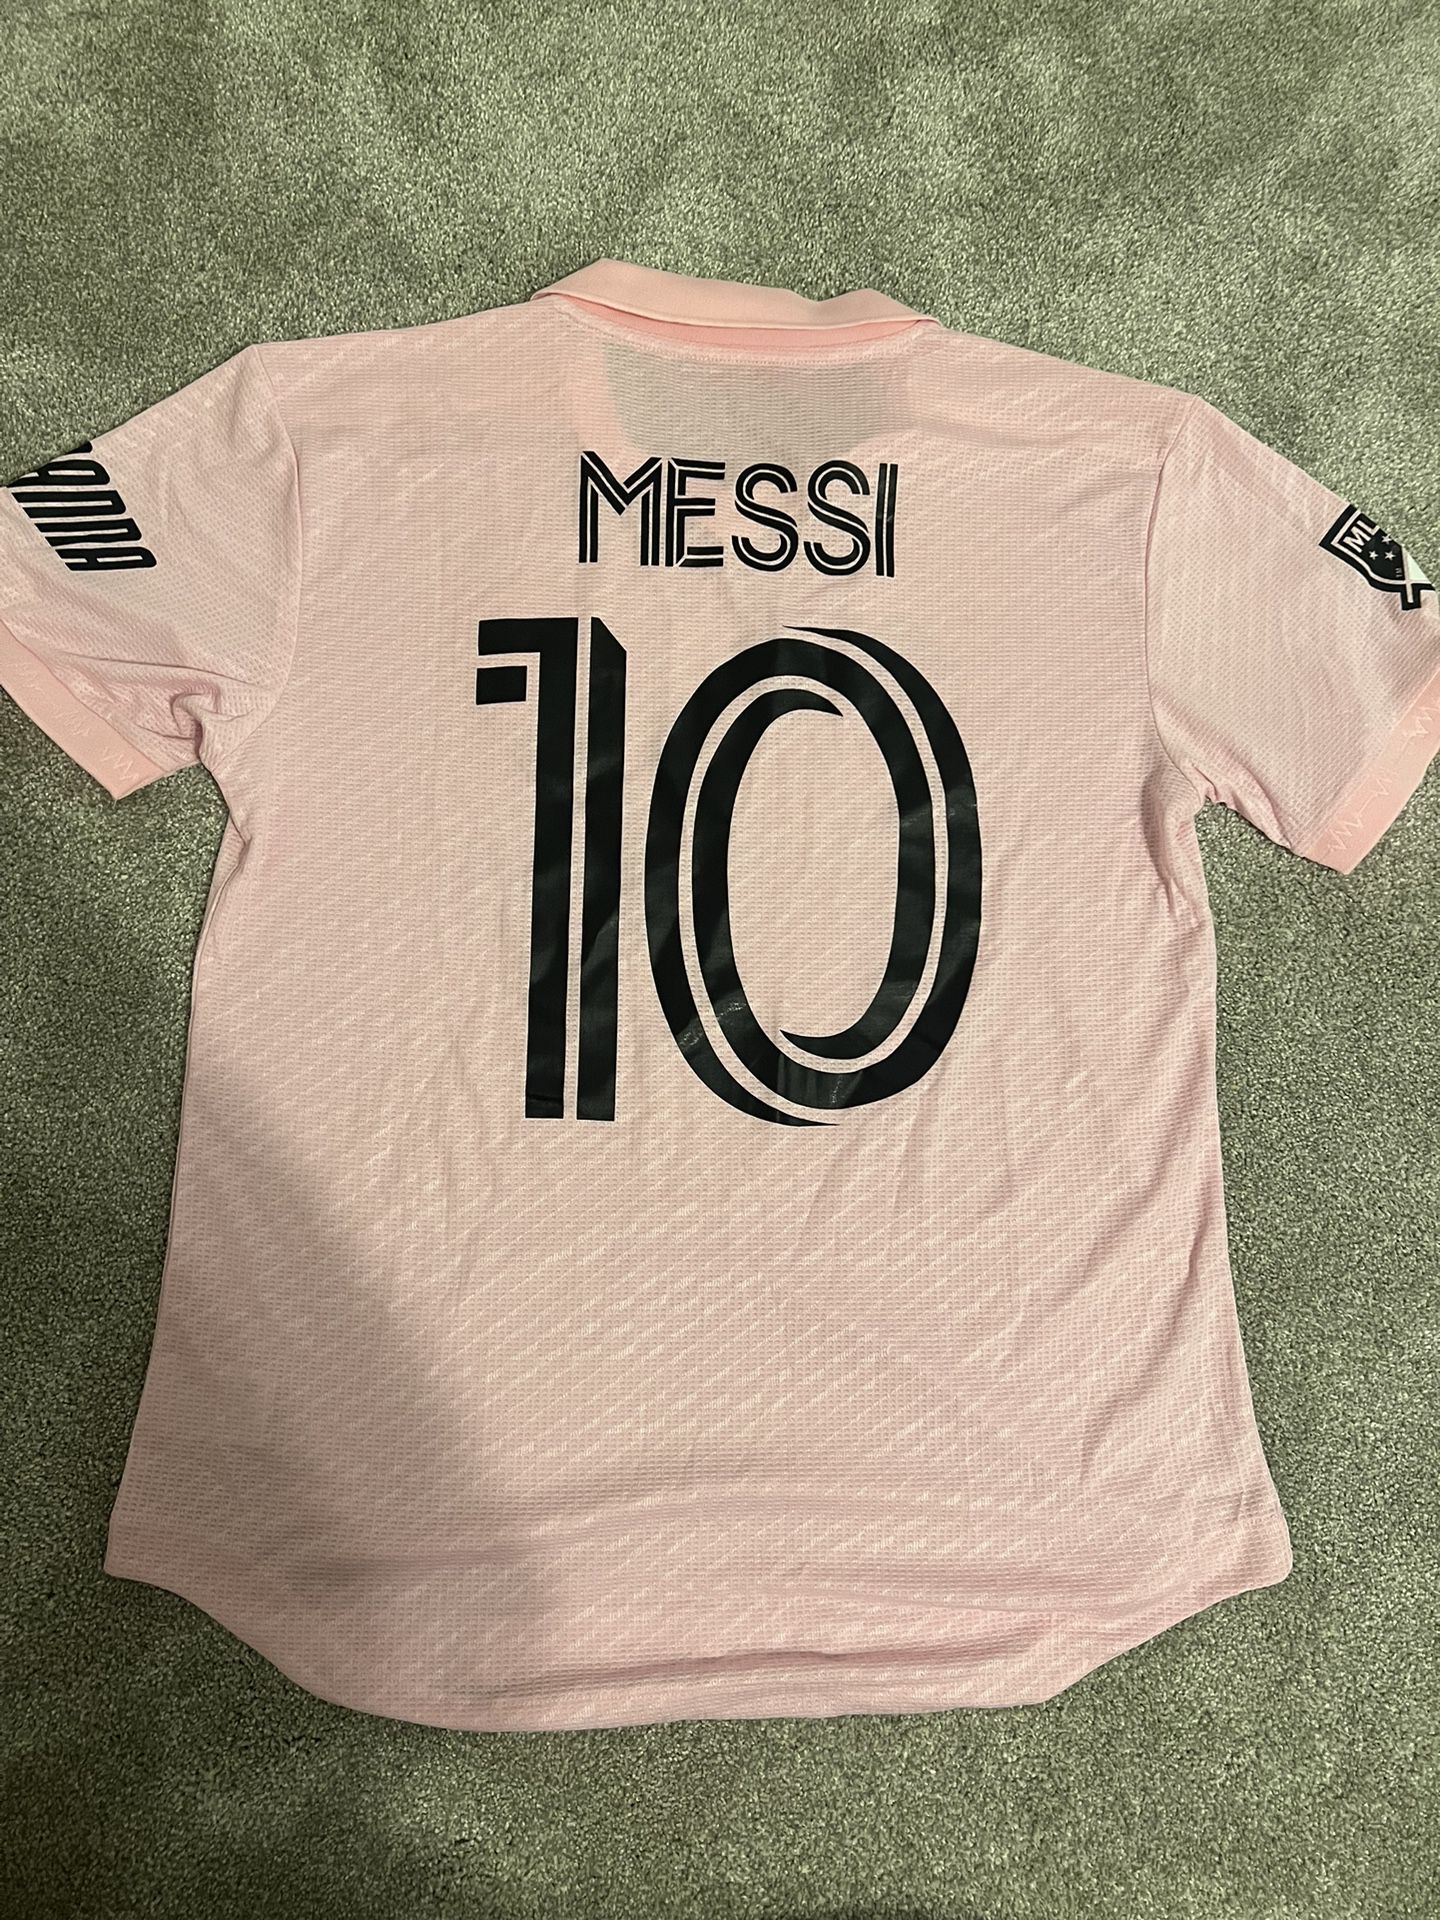 Inter Miami Messi 10